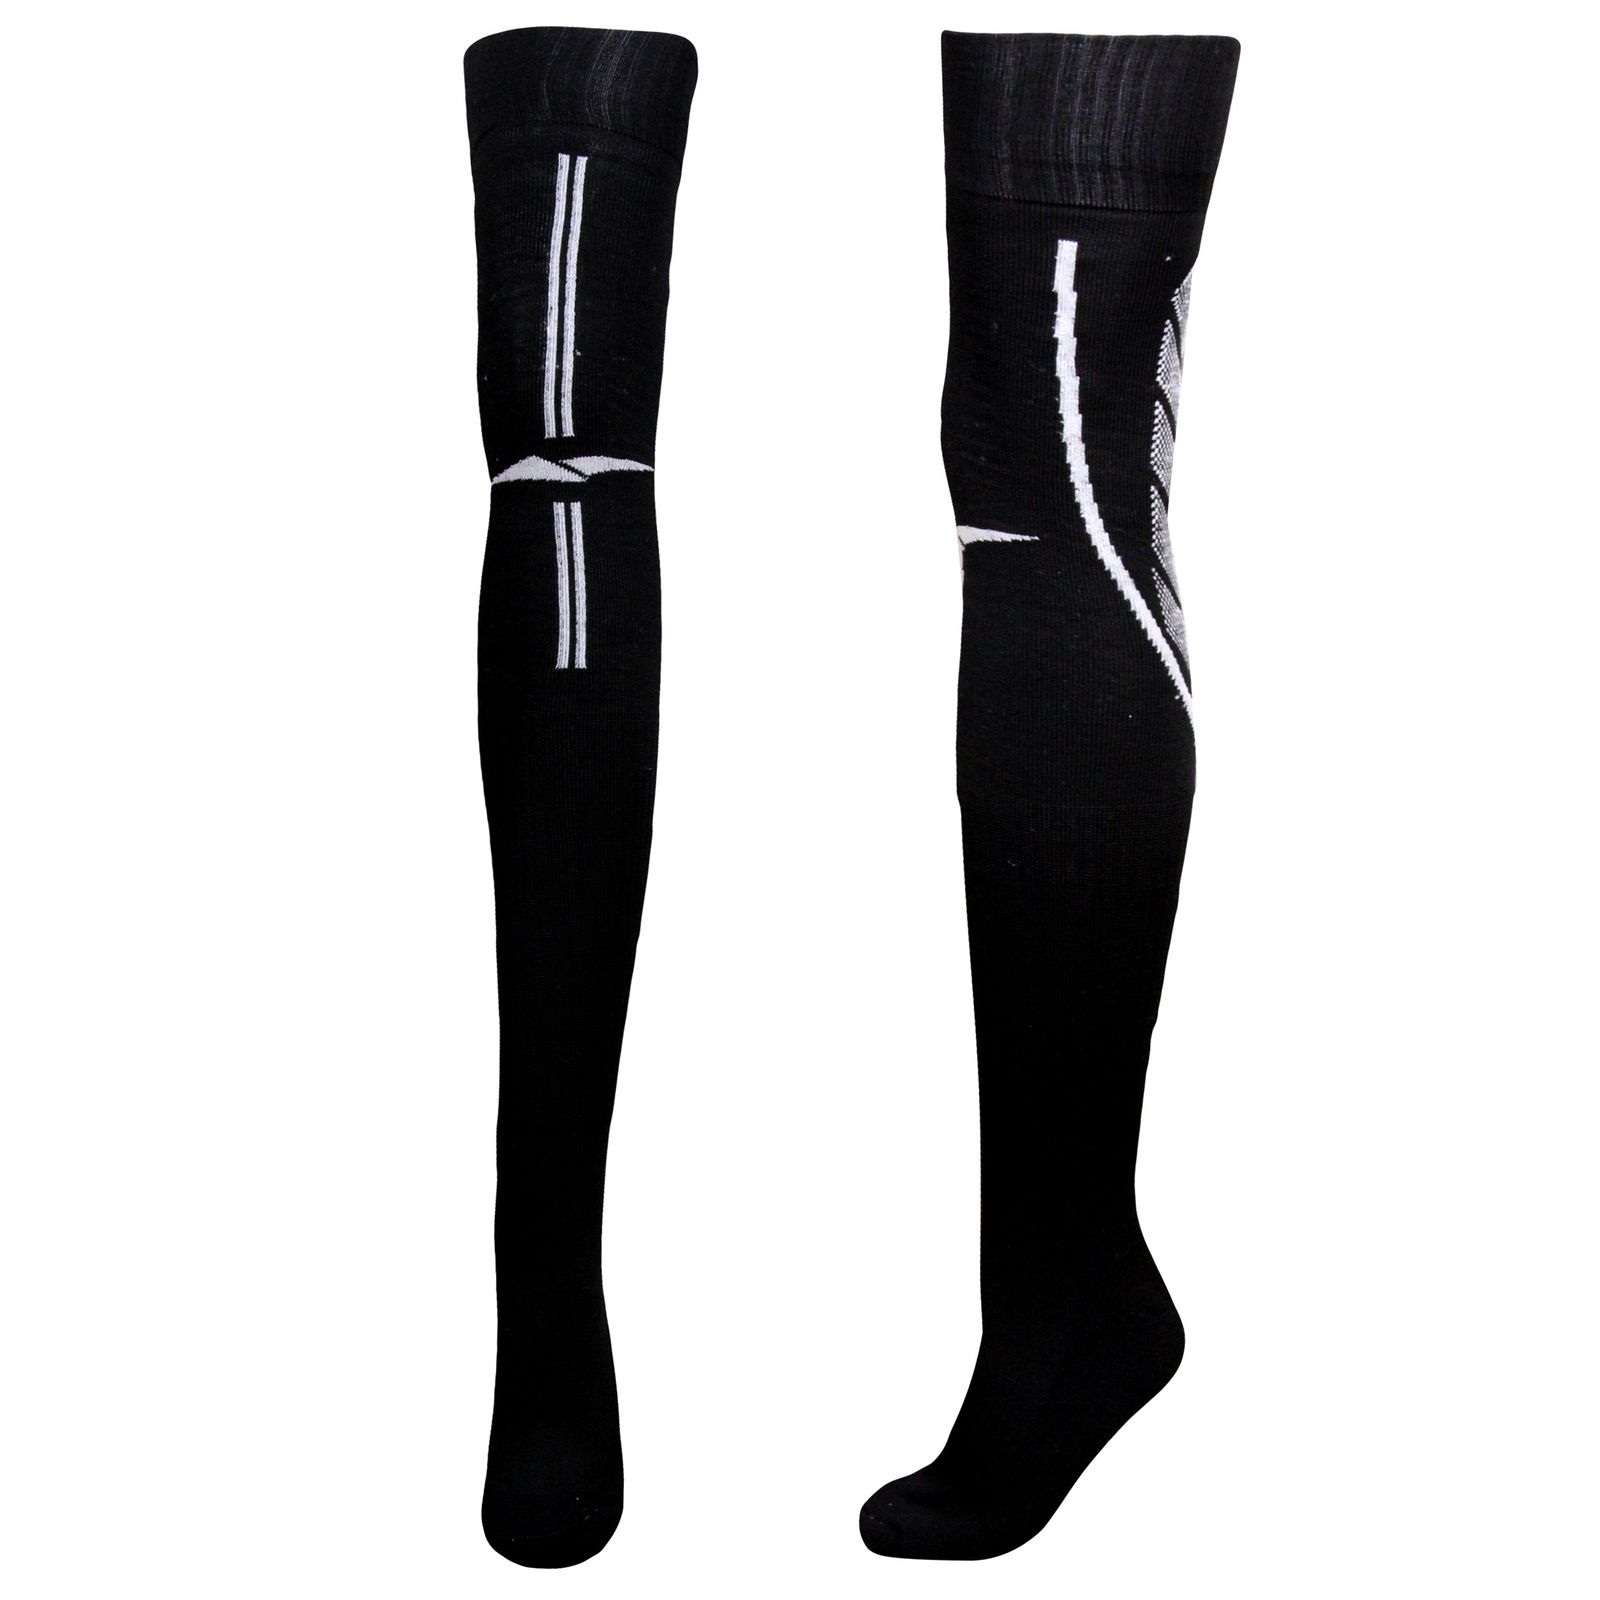                          جوراب ورزشی ساق بلند مردانه ماییلدا مدل کف حوله ای کد 4187 رنگ مشکی -  - 2